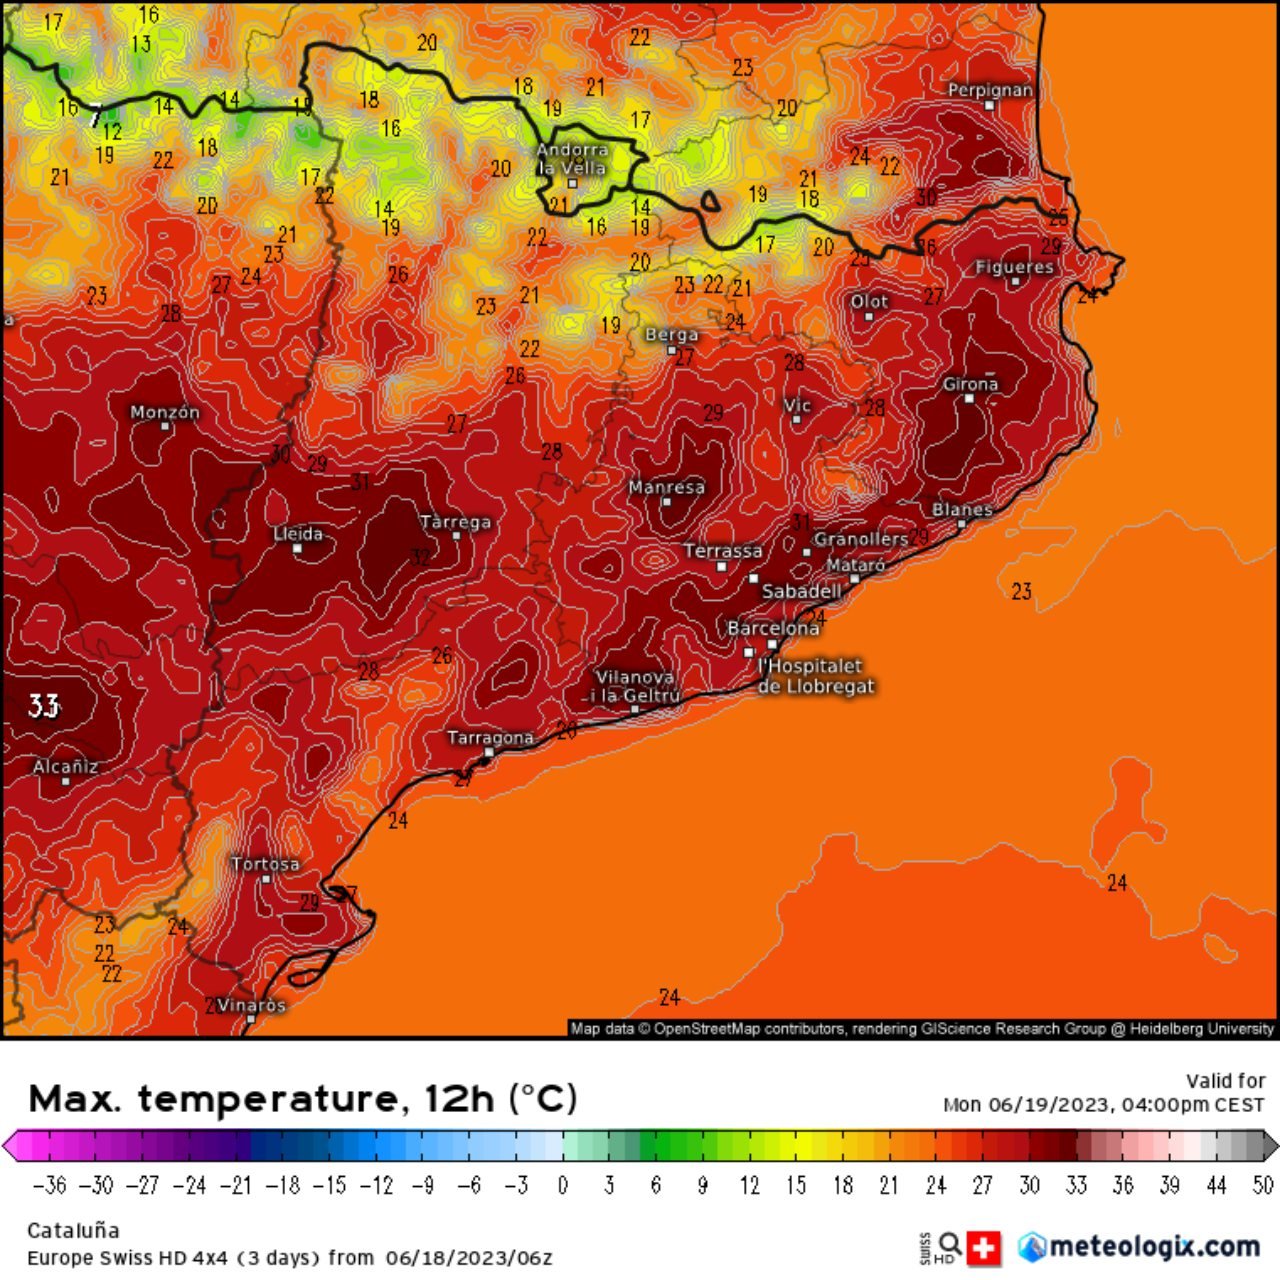 El calor apretará en toda Catalunya esta semana. Las máximas para el lunes superan los 30 °C a casi todas partes / Meteologix.com